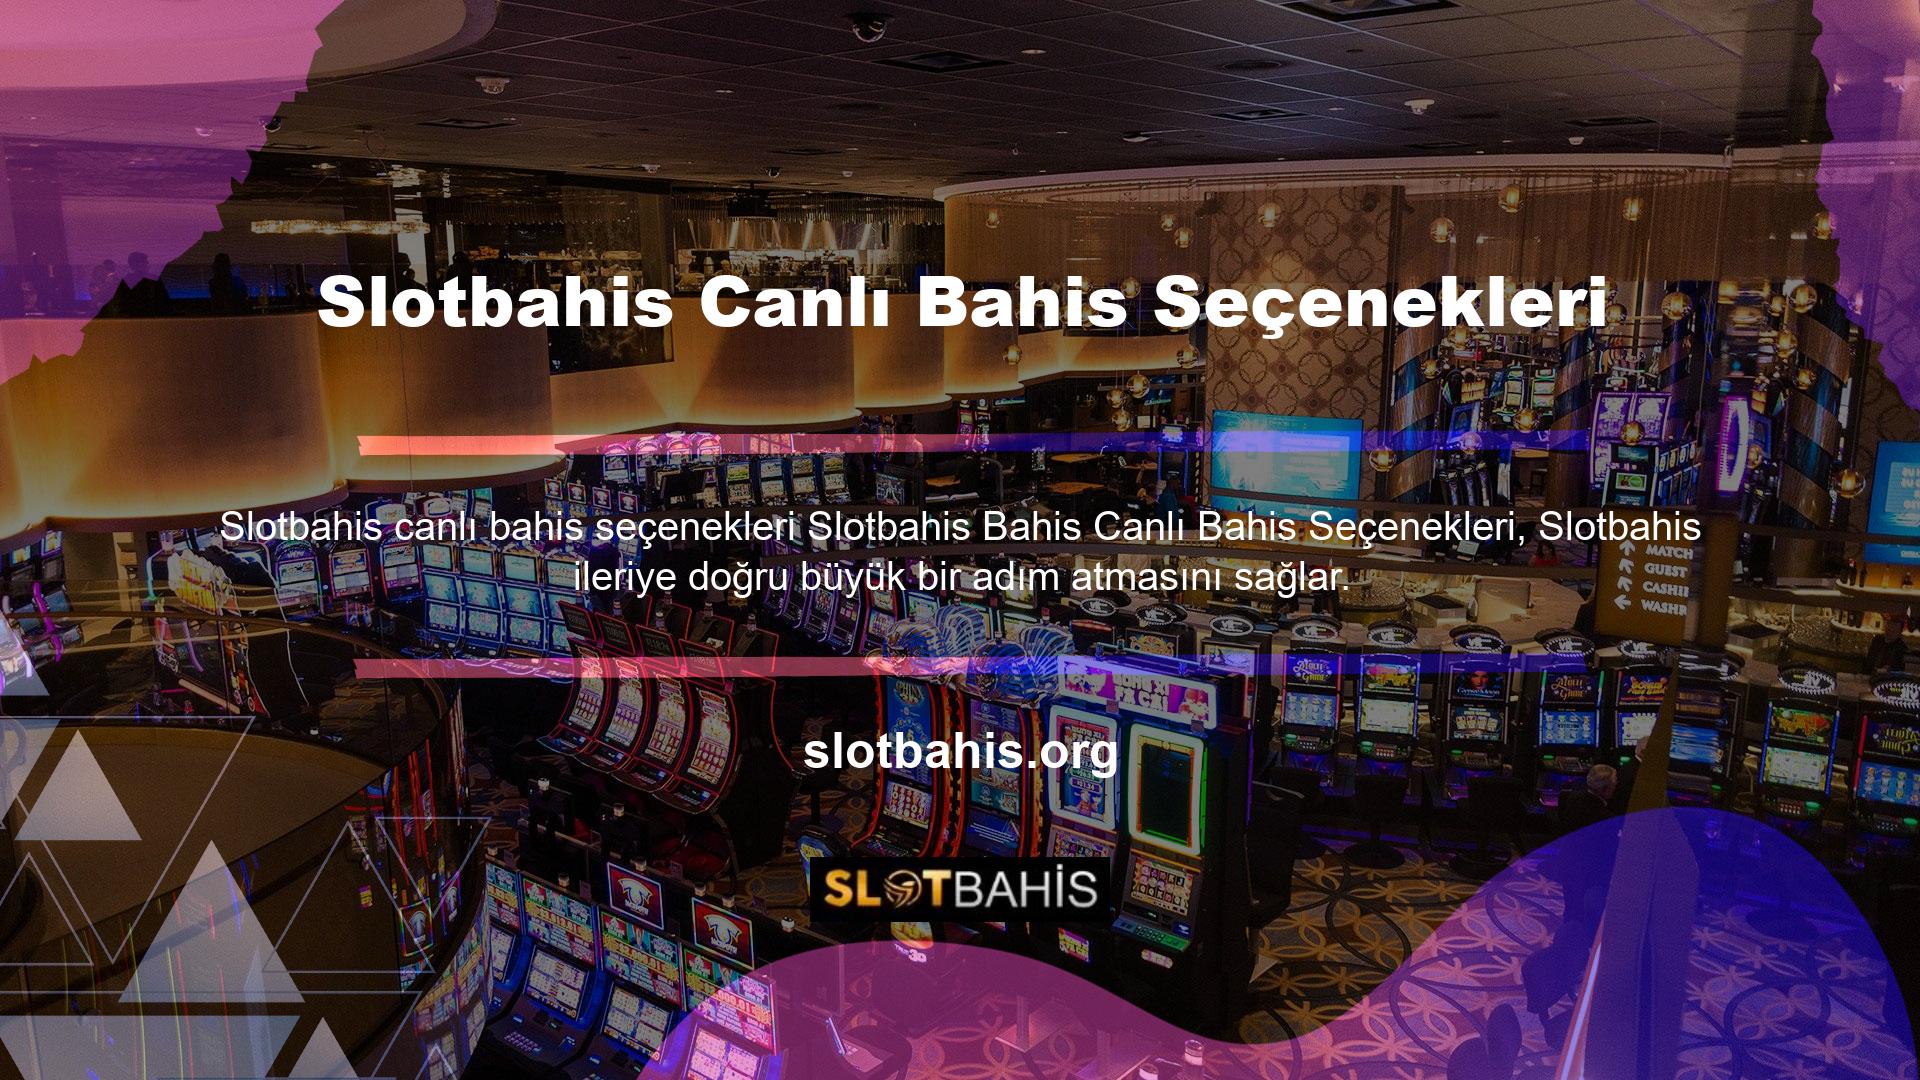 Slotbahis, güvenilir kullanıcılara sunulduğunda şifrelidir, ancak kullanıcılar arasında çok sayıda popüler ve popüler olmayan oyun sistemi nedeniyle müşteriler arasında popüler bir oyun sistemi haline gelmiştir